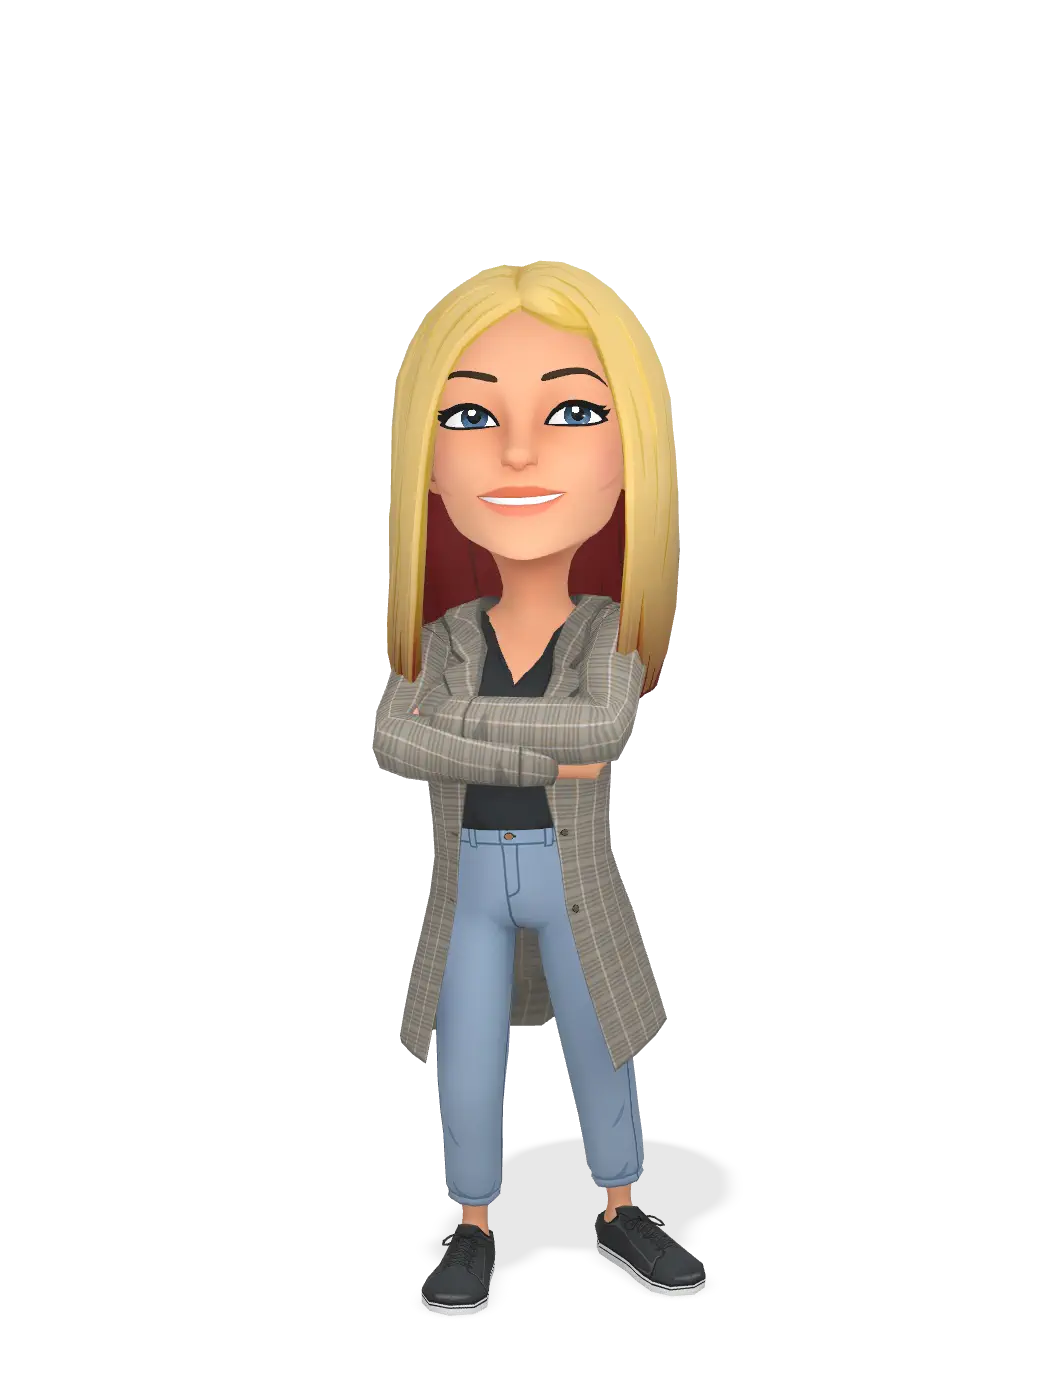 3D Bitmoji for chelseahandler avatar